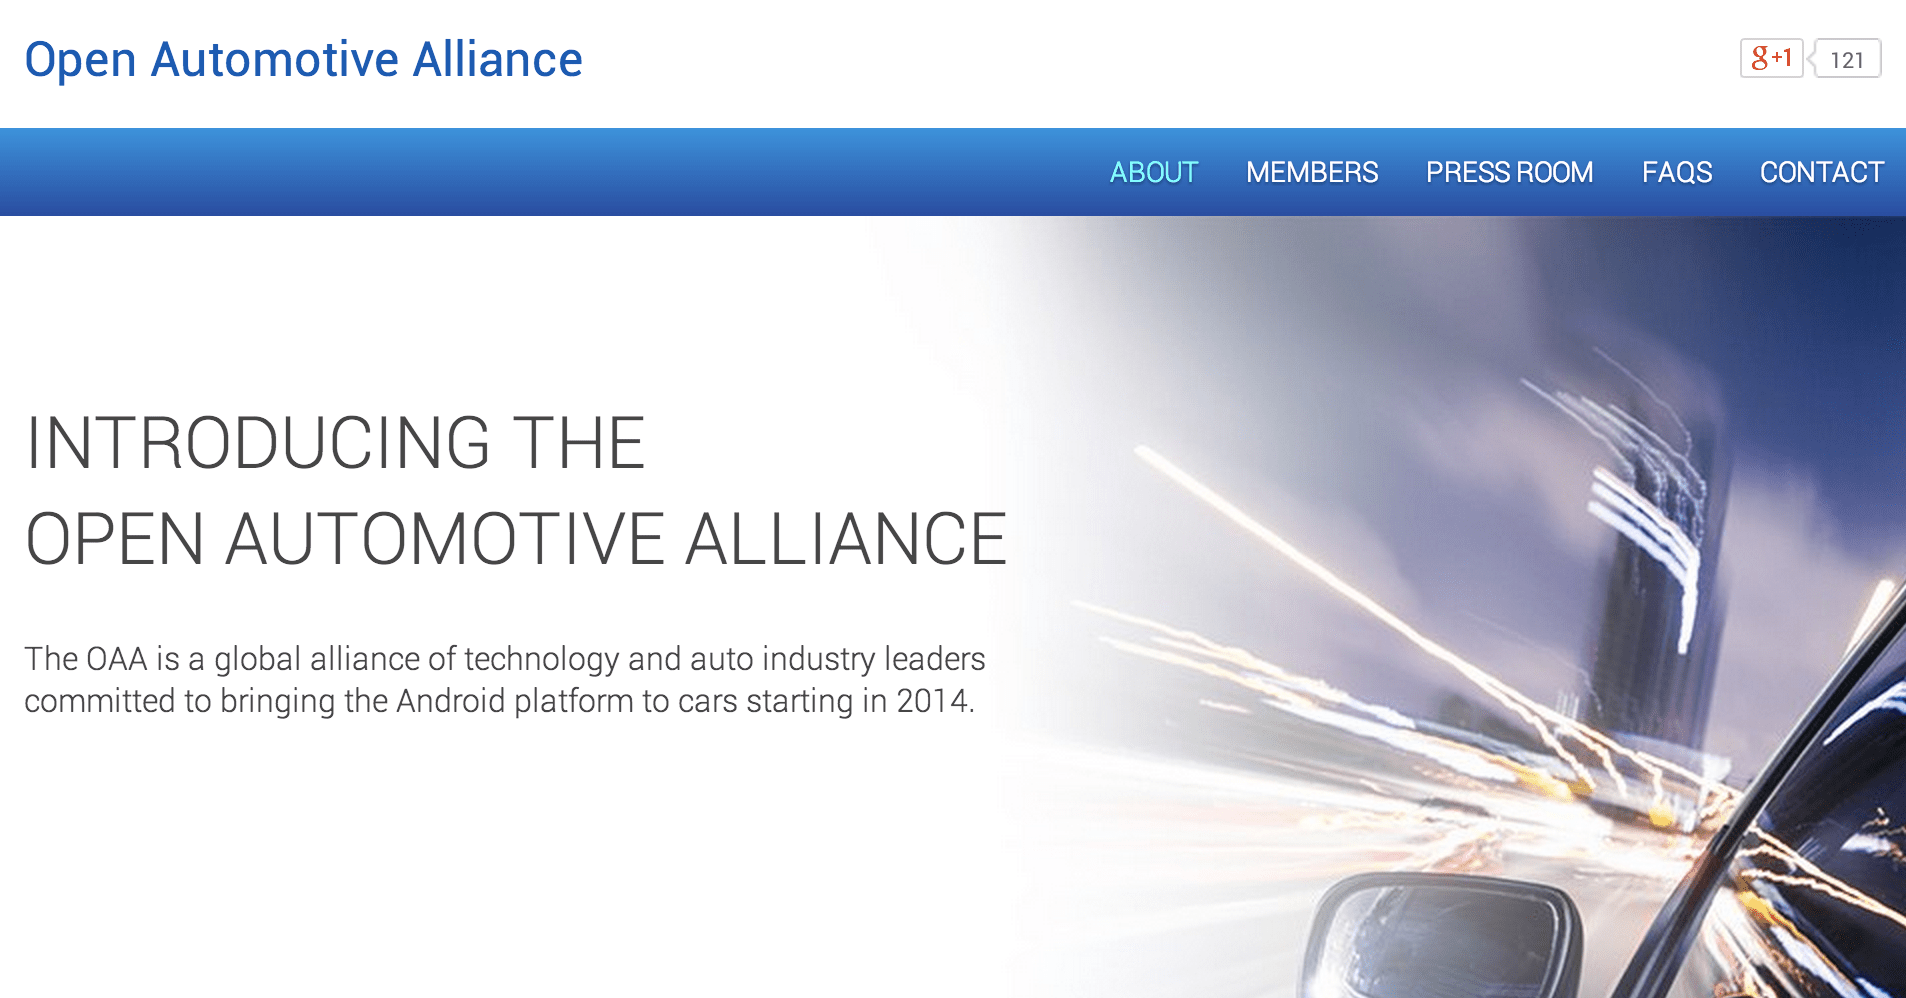 Google lance l’Open Automotive Alliance afin d’intégrer Android dans les voitures !